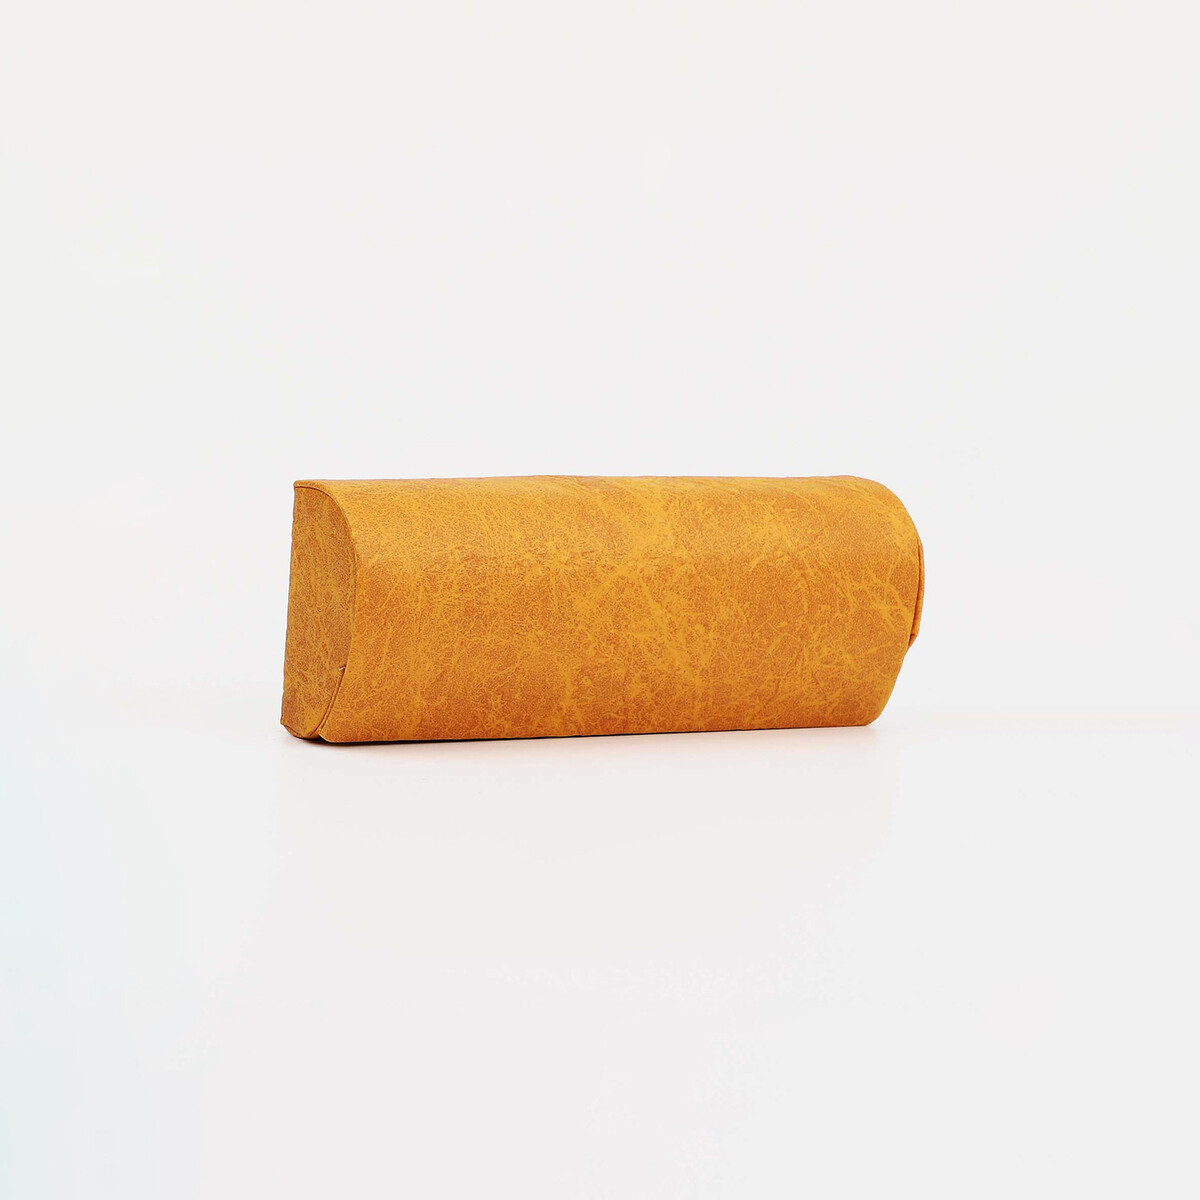 Футляр для очков на магните, 15.5 см х 3.5 см х 6 см, салфетка, цвет оранжевый